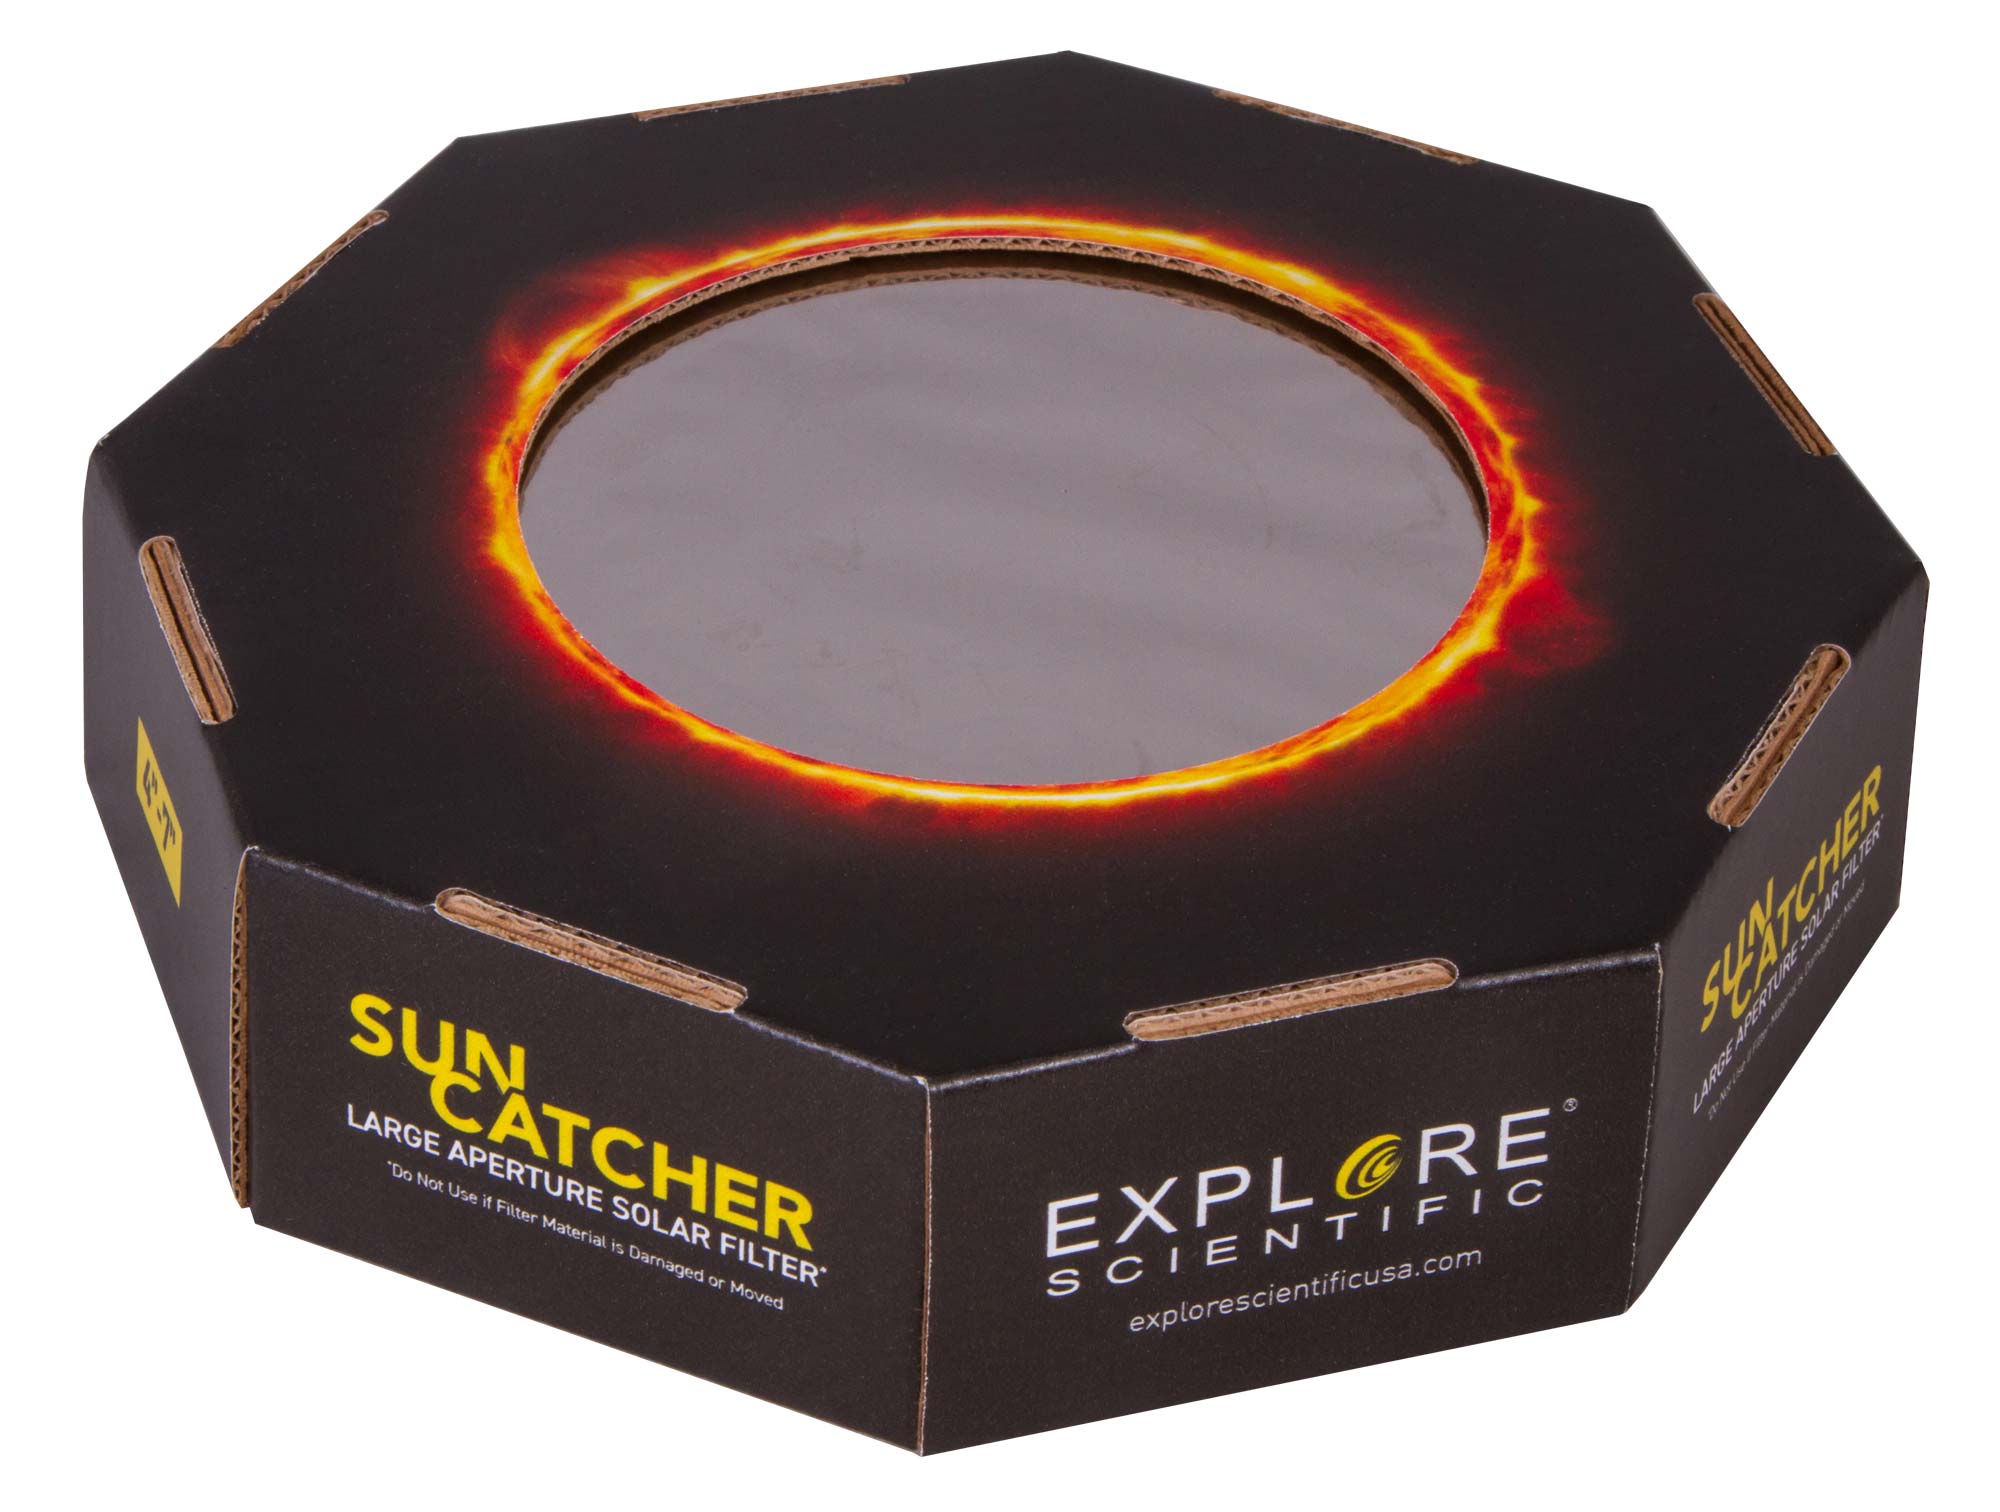 Filtro Solare Explore Scientific Sun Catcher per Telescopi con una Apertura di 60–80 mm